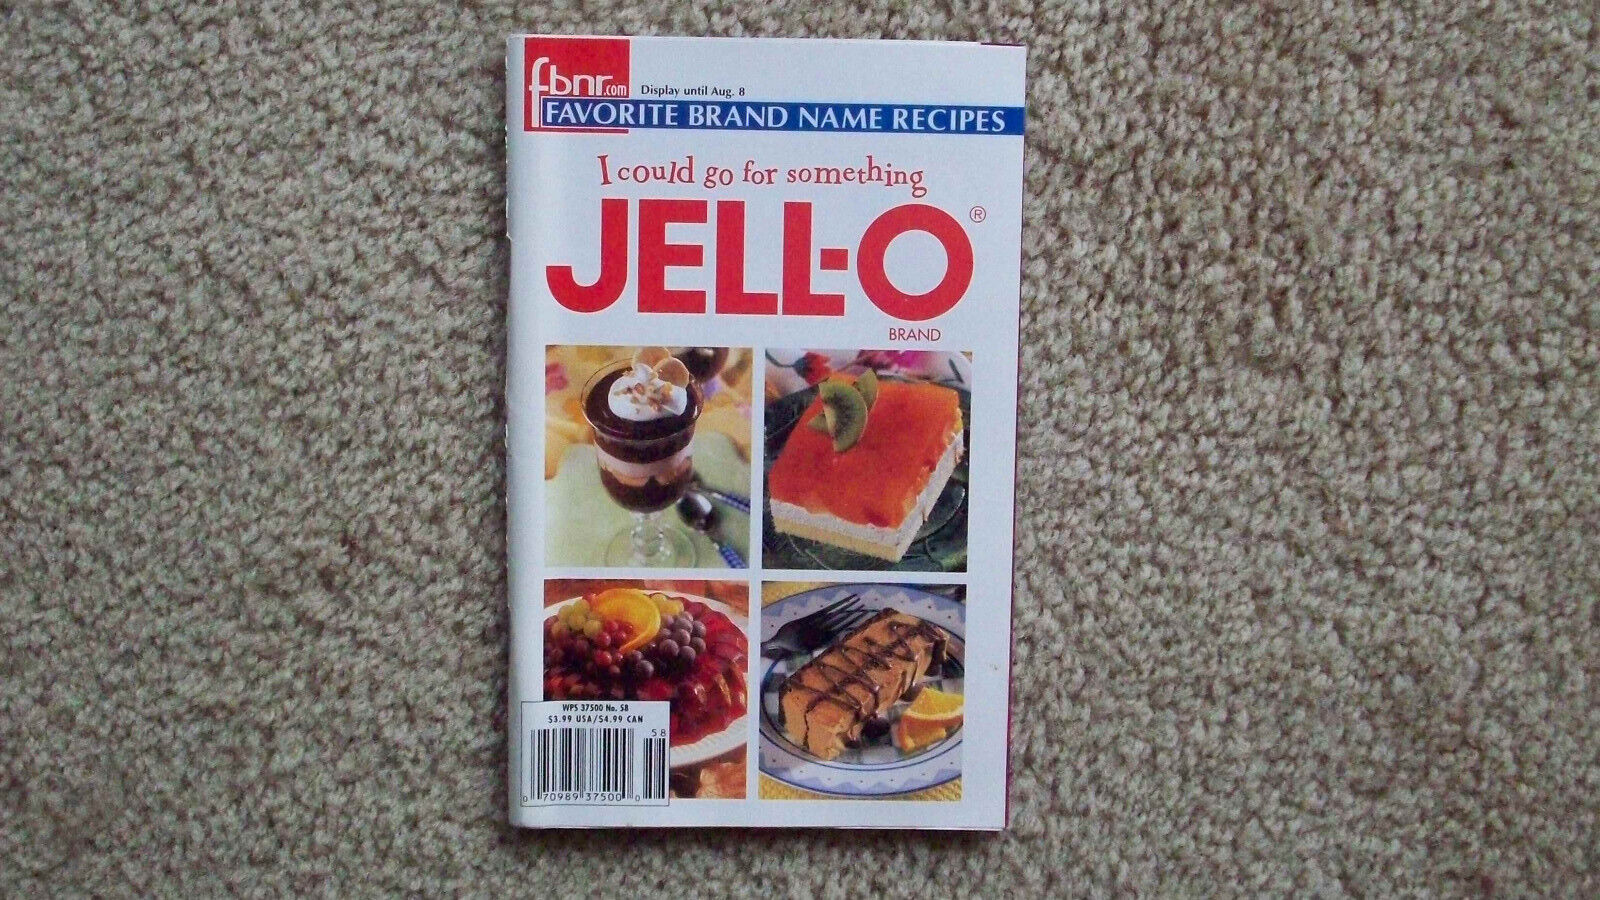 Jello Favorite Name Brand Recipe booklet, circa 2000